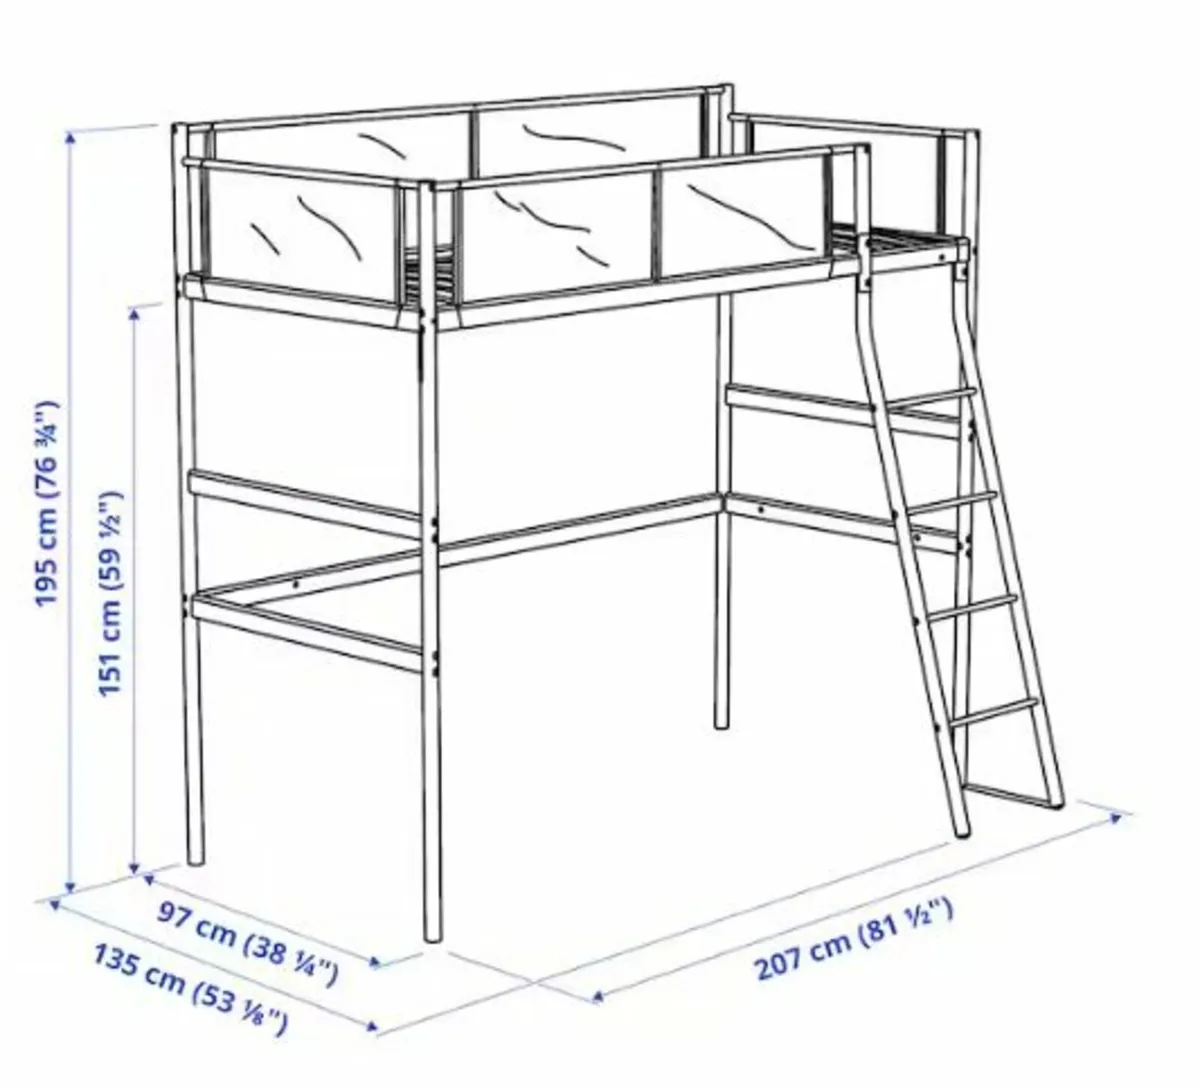 Metal loft bed frame - Image 1